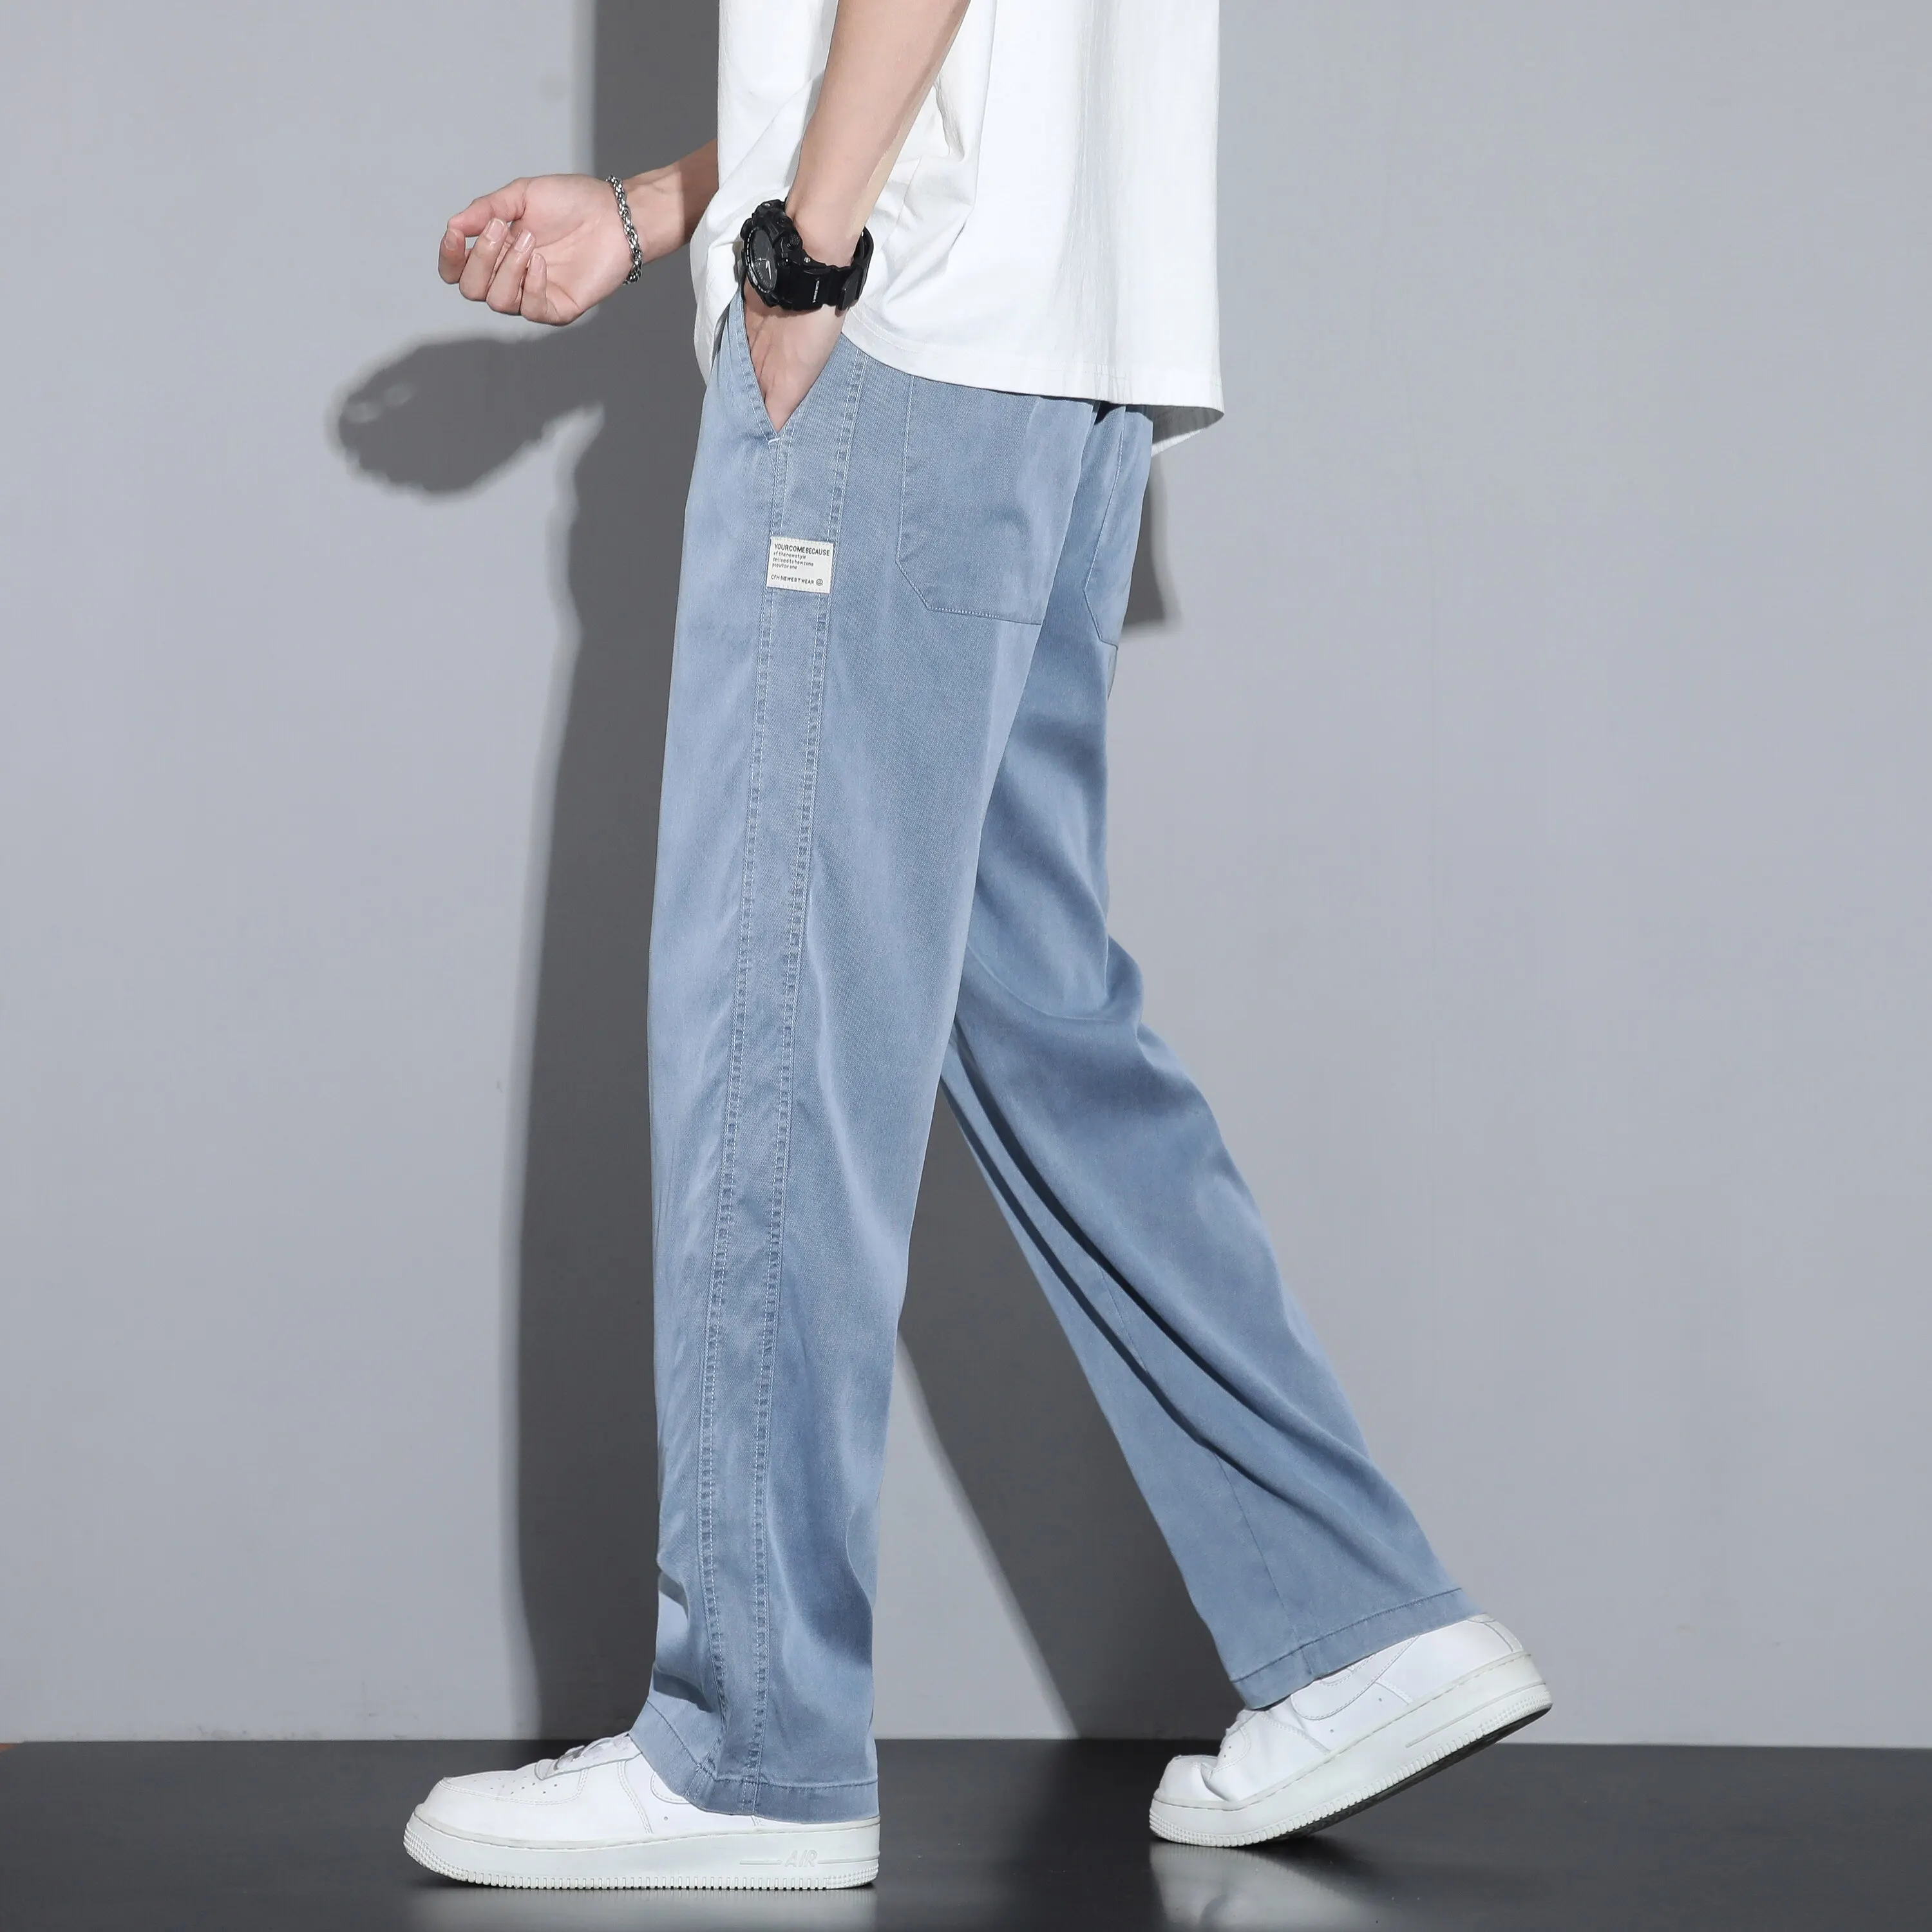 سروال الصيف لليوسيل النسيج جينز الرجال رقيقة فضفاضة السراويل المستقيمة الرباط مرنة الخصر كوريا كوريا غير الرسمية بالإضافة إلى الحجم m-5xl